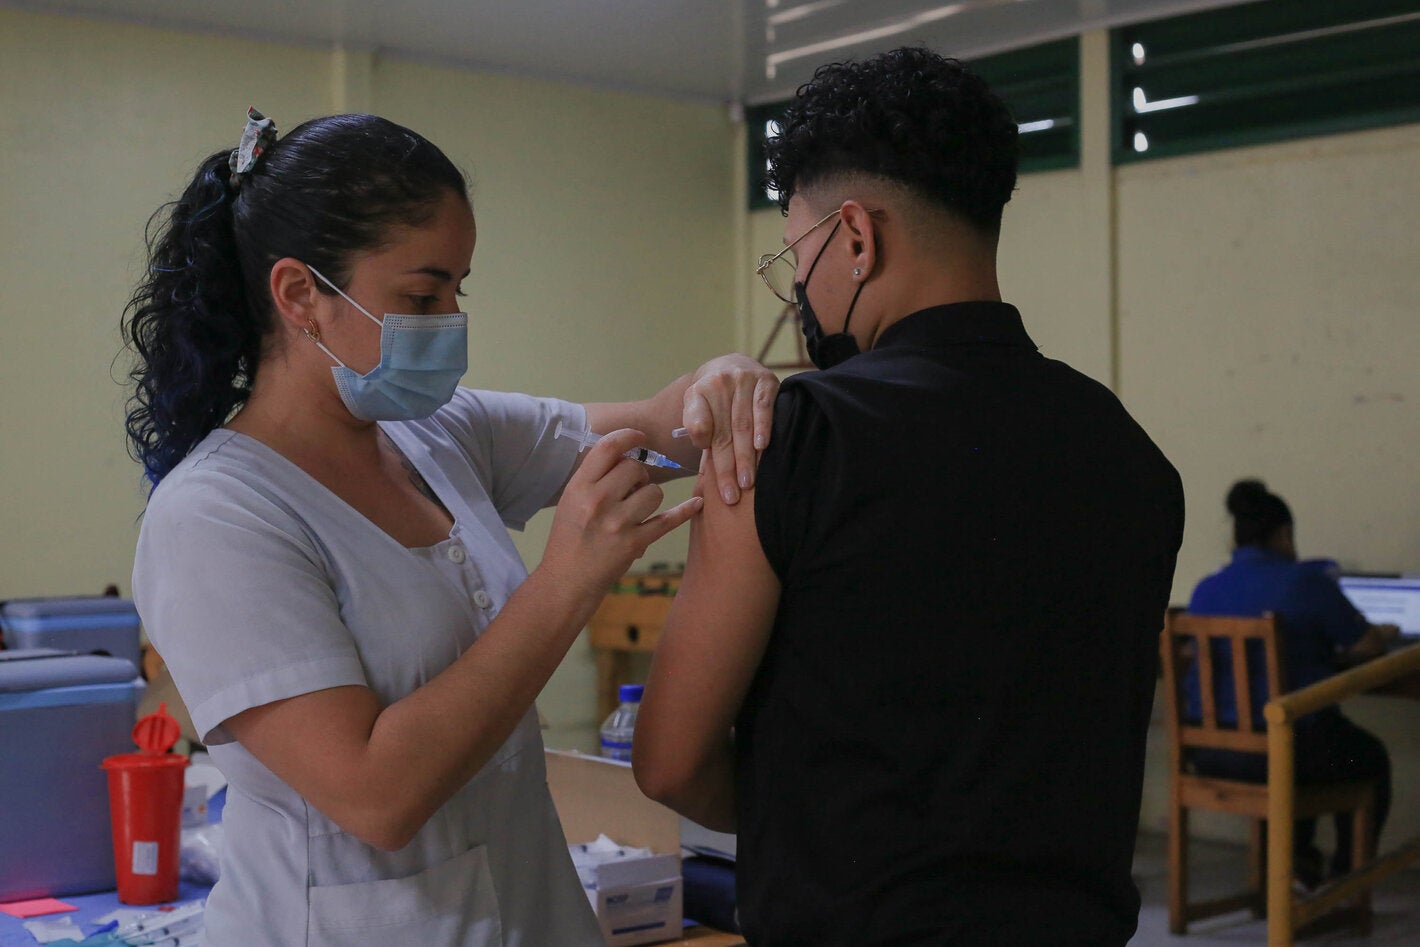 Cerca del 94% de la población de Costa Rica considera importante que todas las personas se vacunen contra la COVID-19 pic